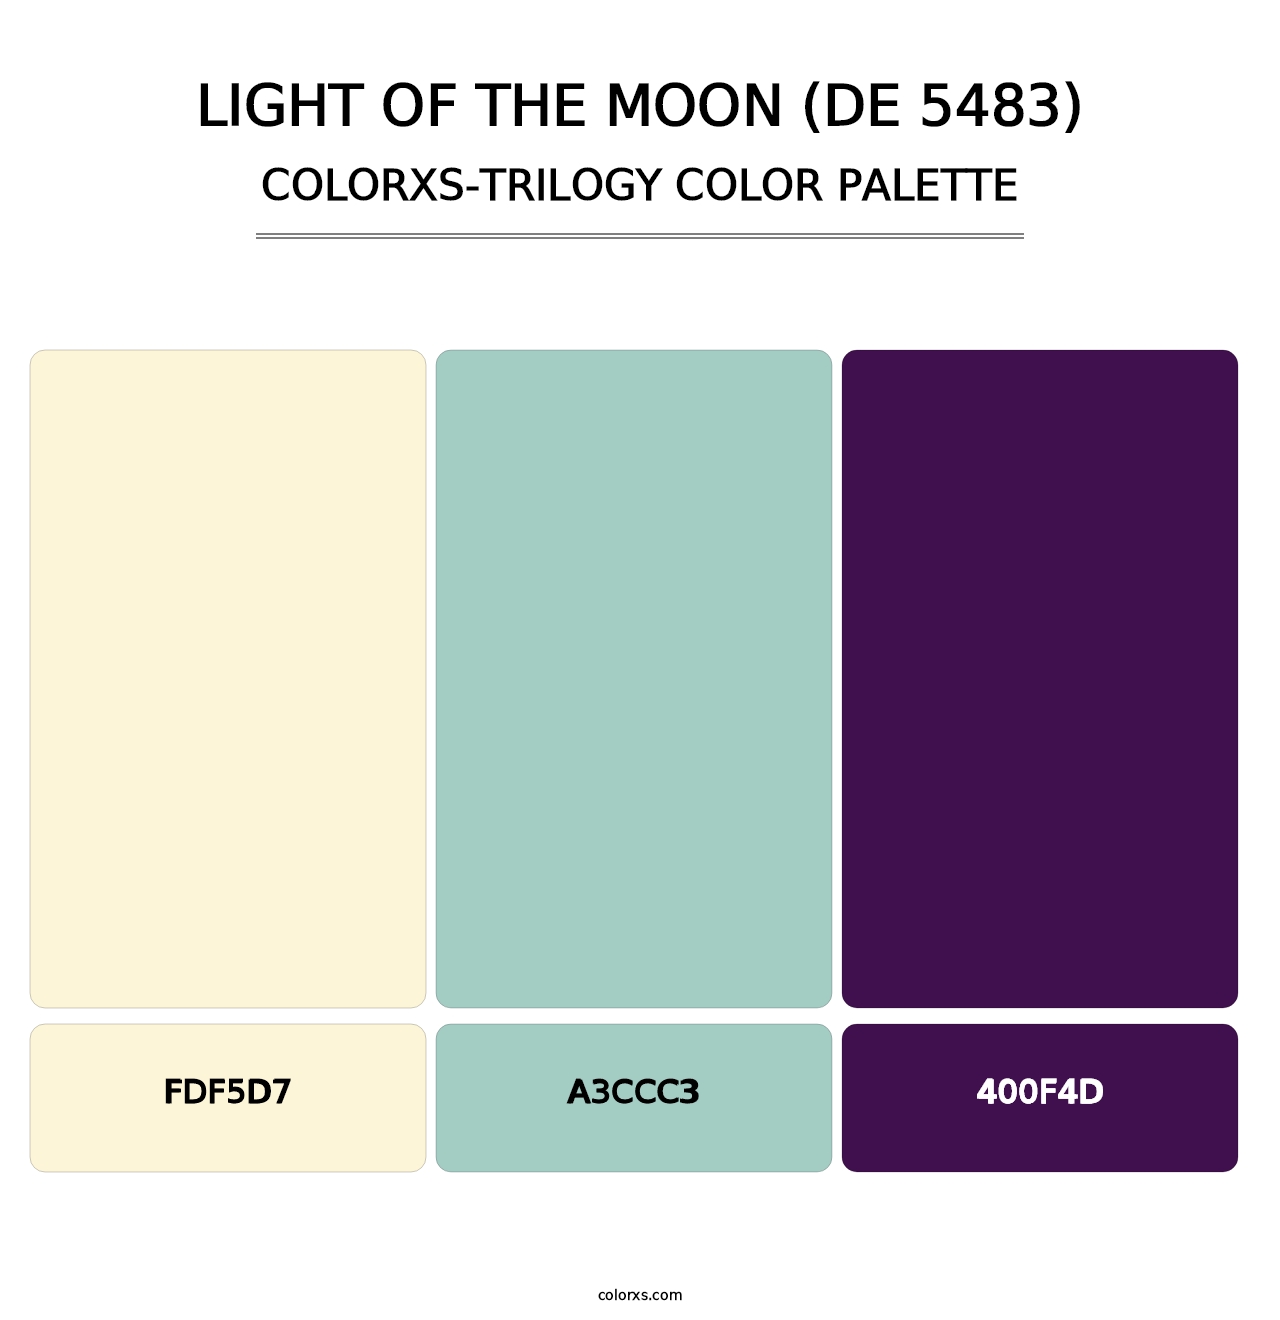 Light of the Moon (DE 5483) - Colorxs Trilogy Palette